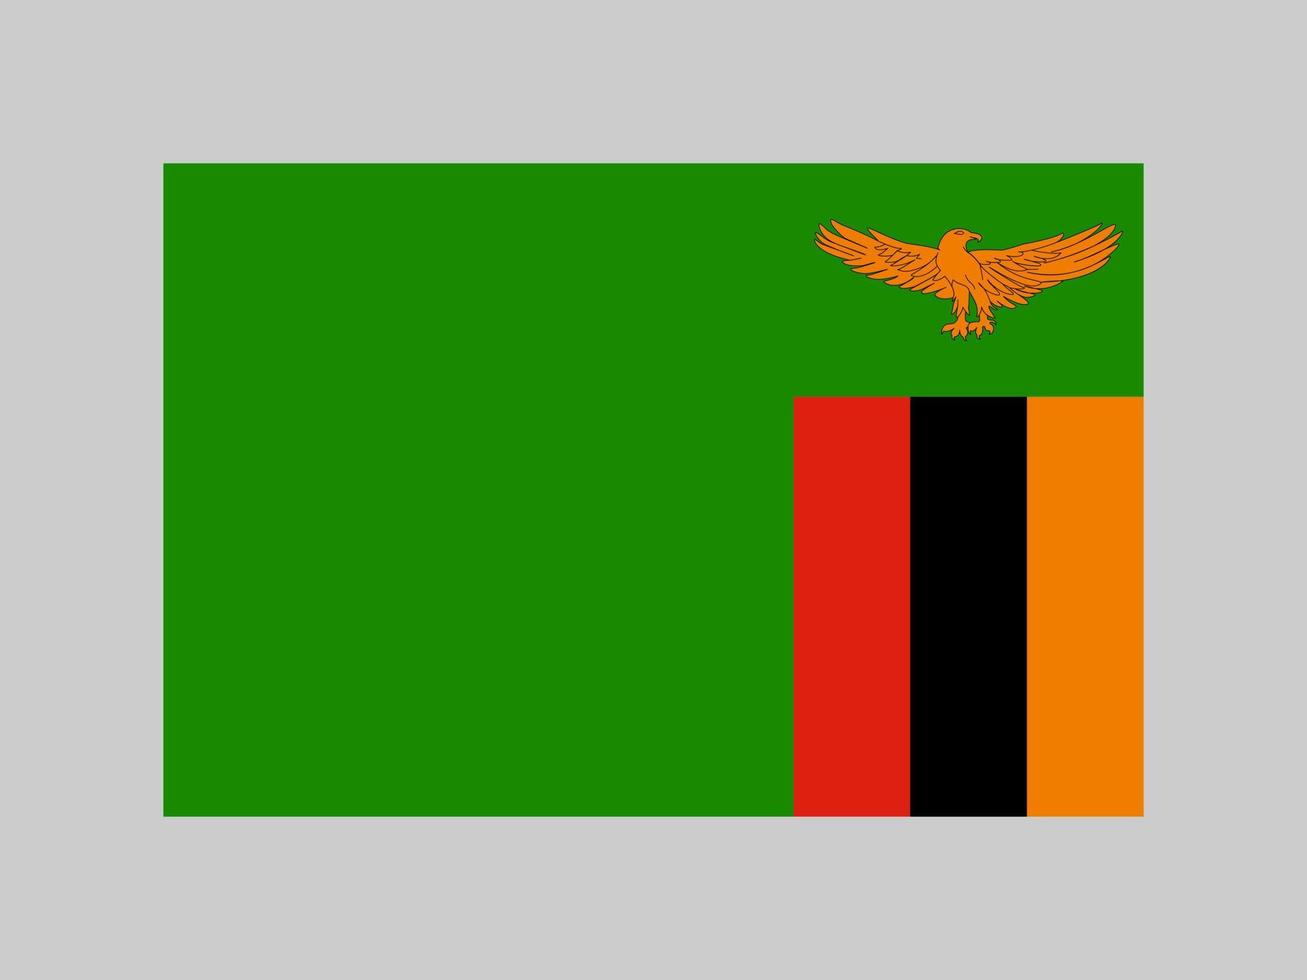 zambias flagga, officiella färger och proportioner. vektor illustration.